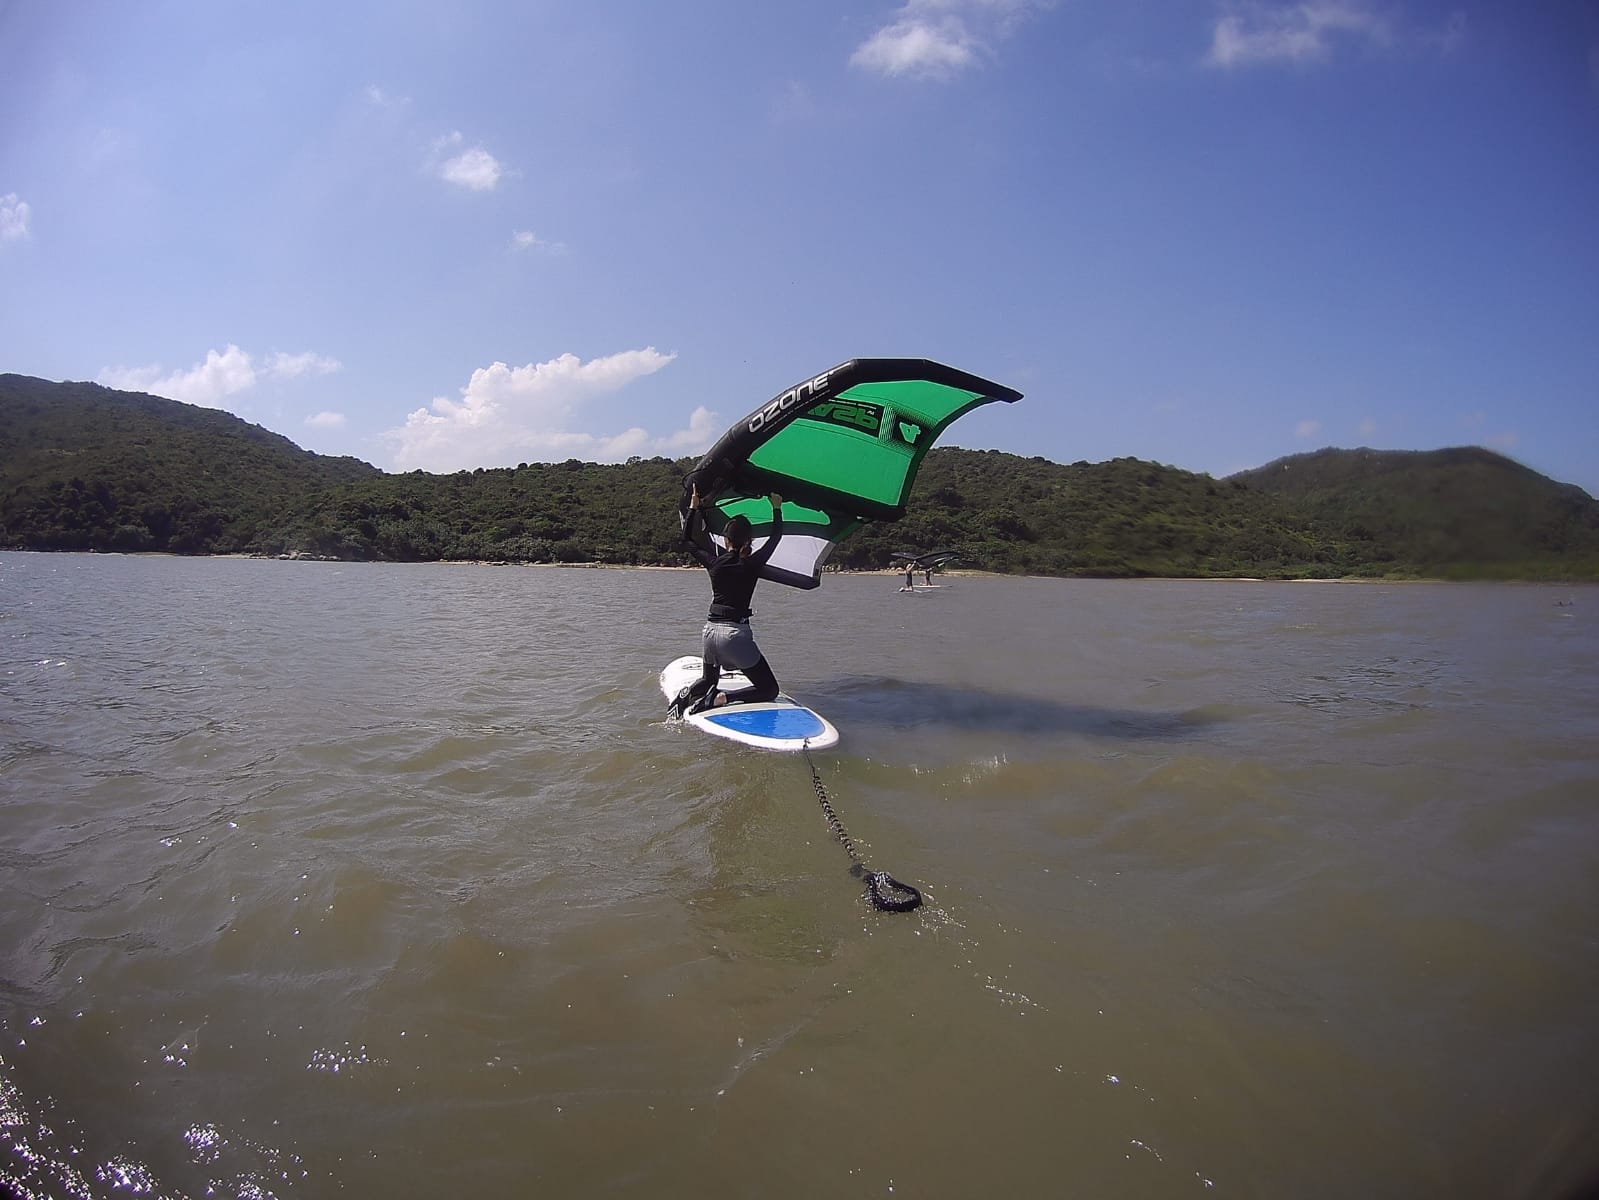 大嶼山風箏衝浪/ 風翼衝浪體驗